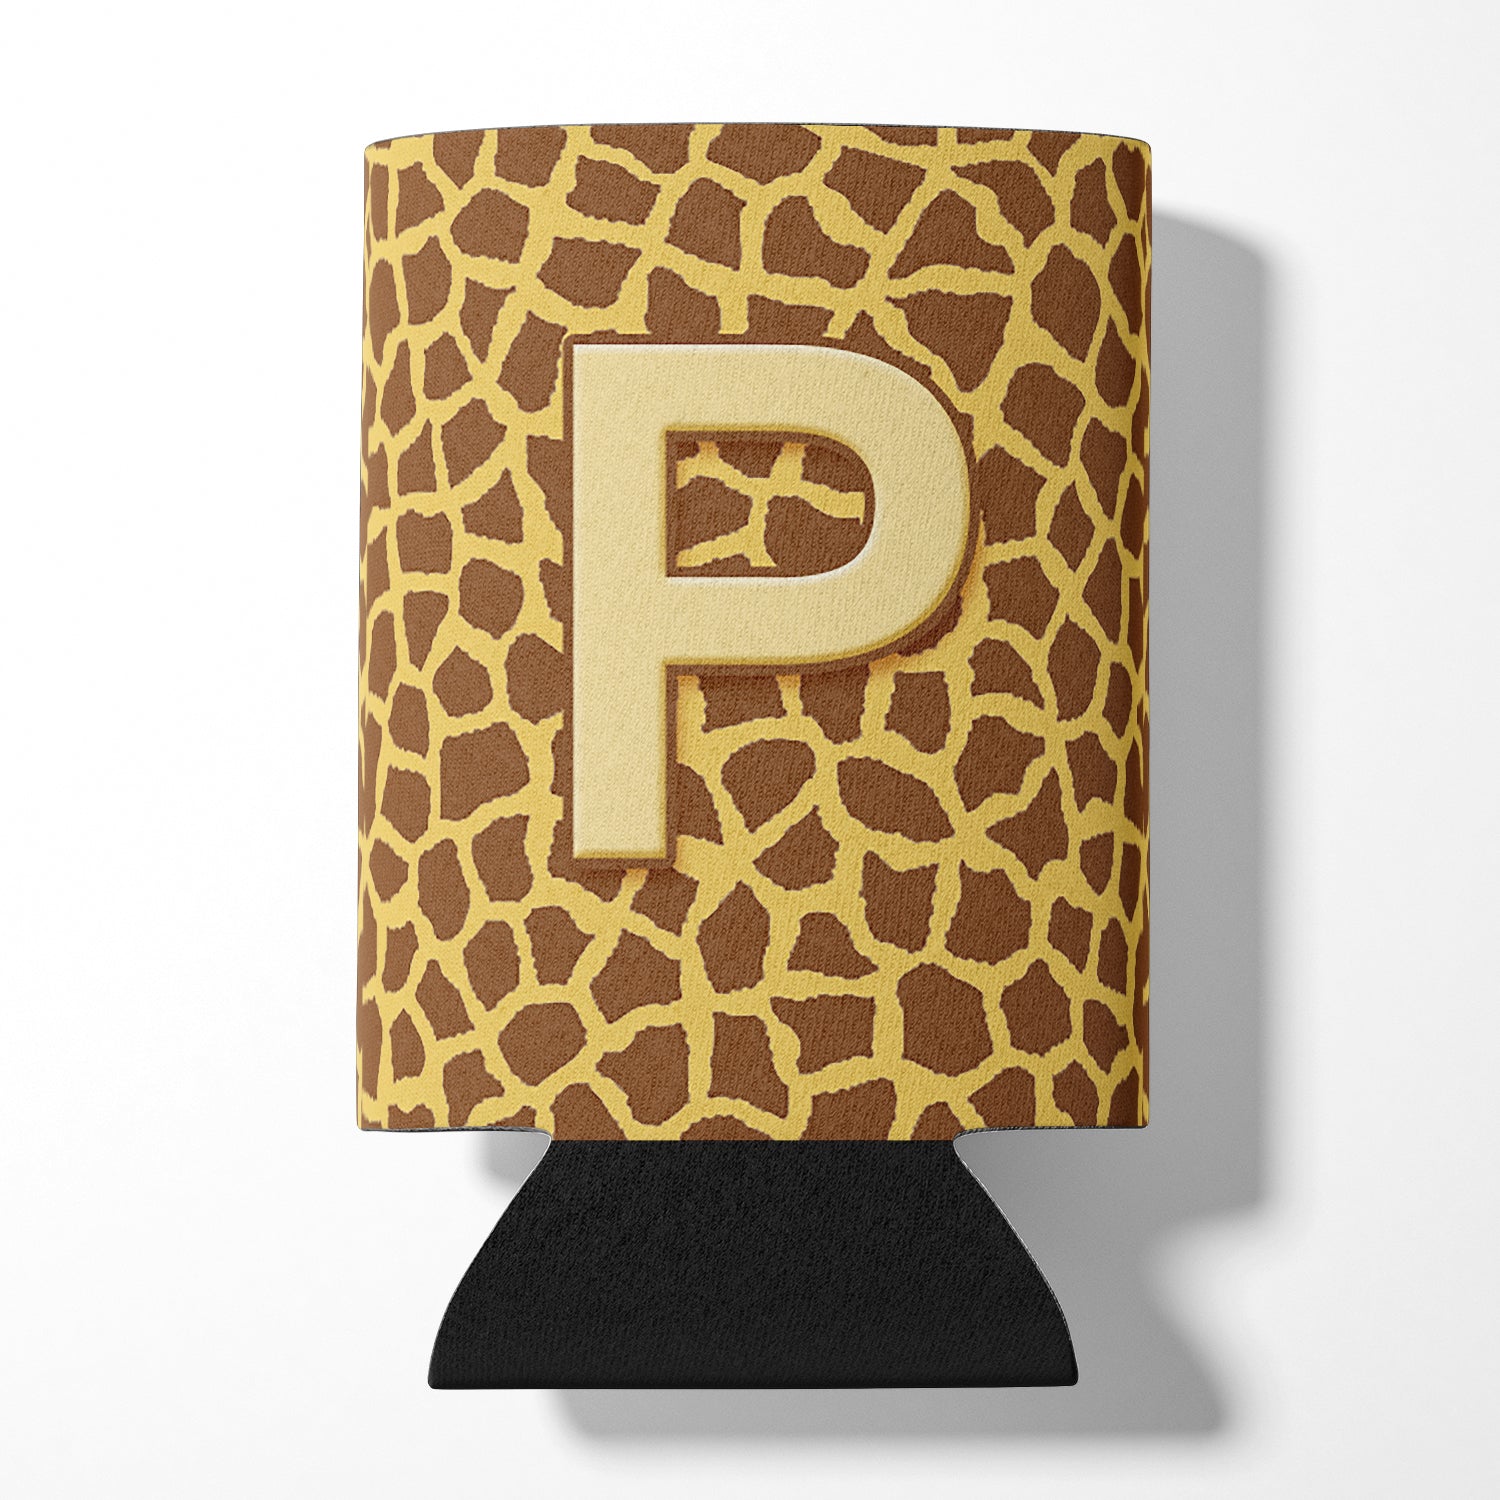 Letter P Initial Monogram - Giraffe Can or Bottle Beverage Insulator Hugger